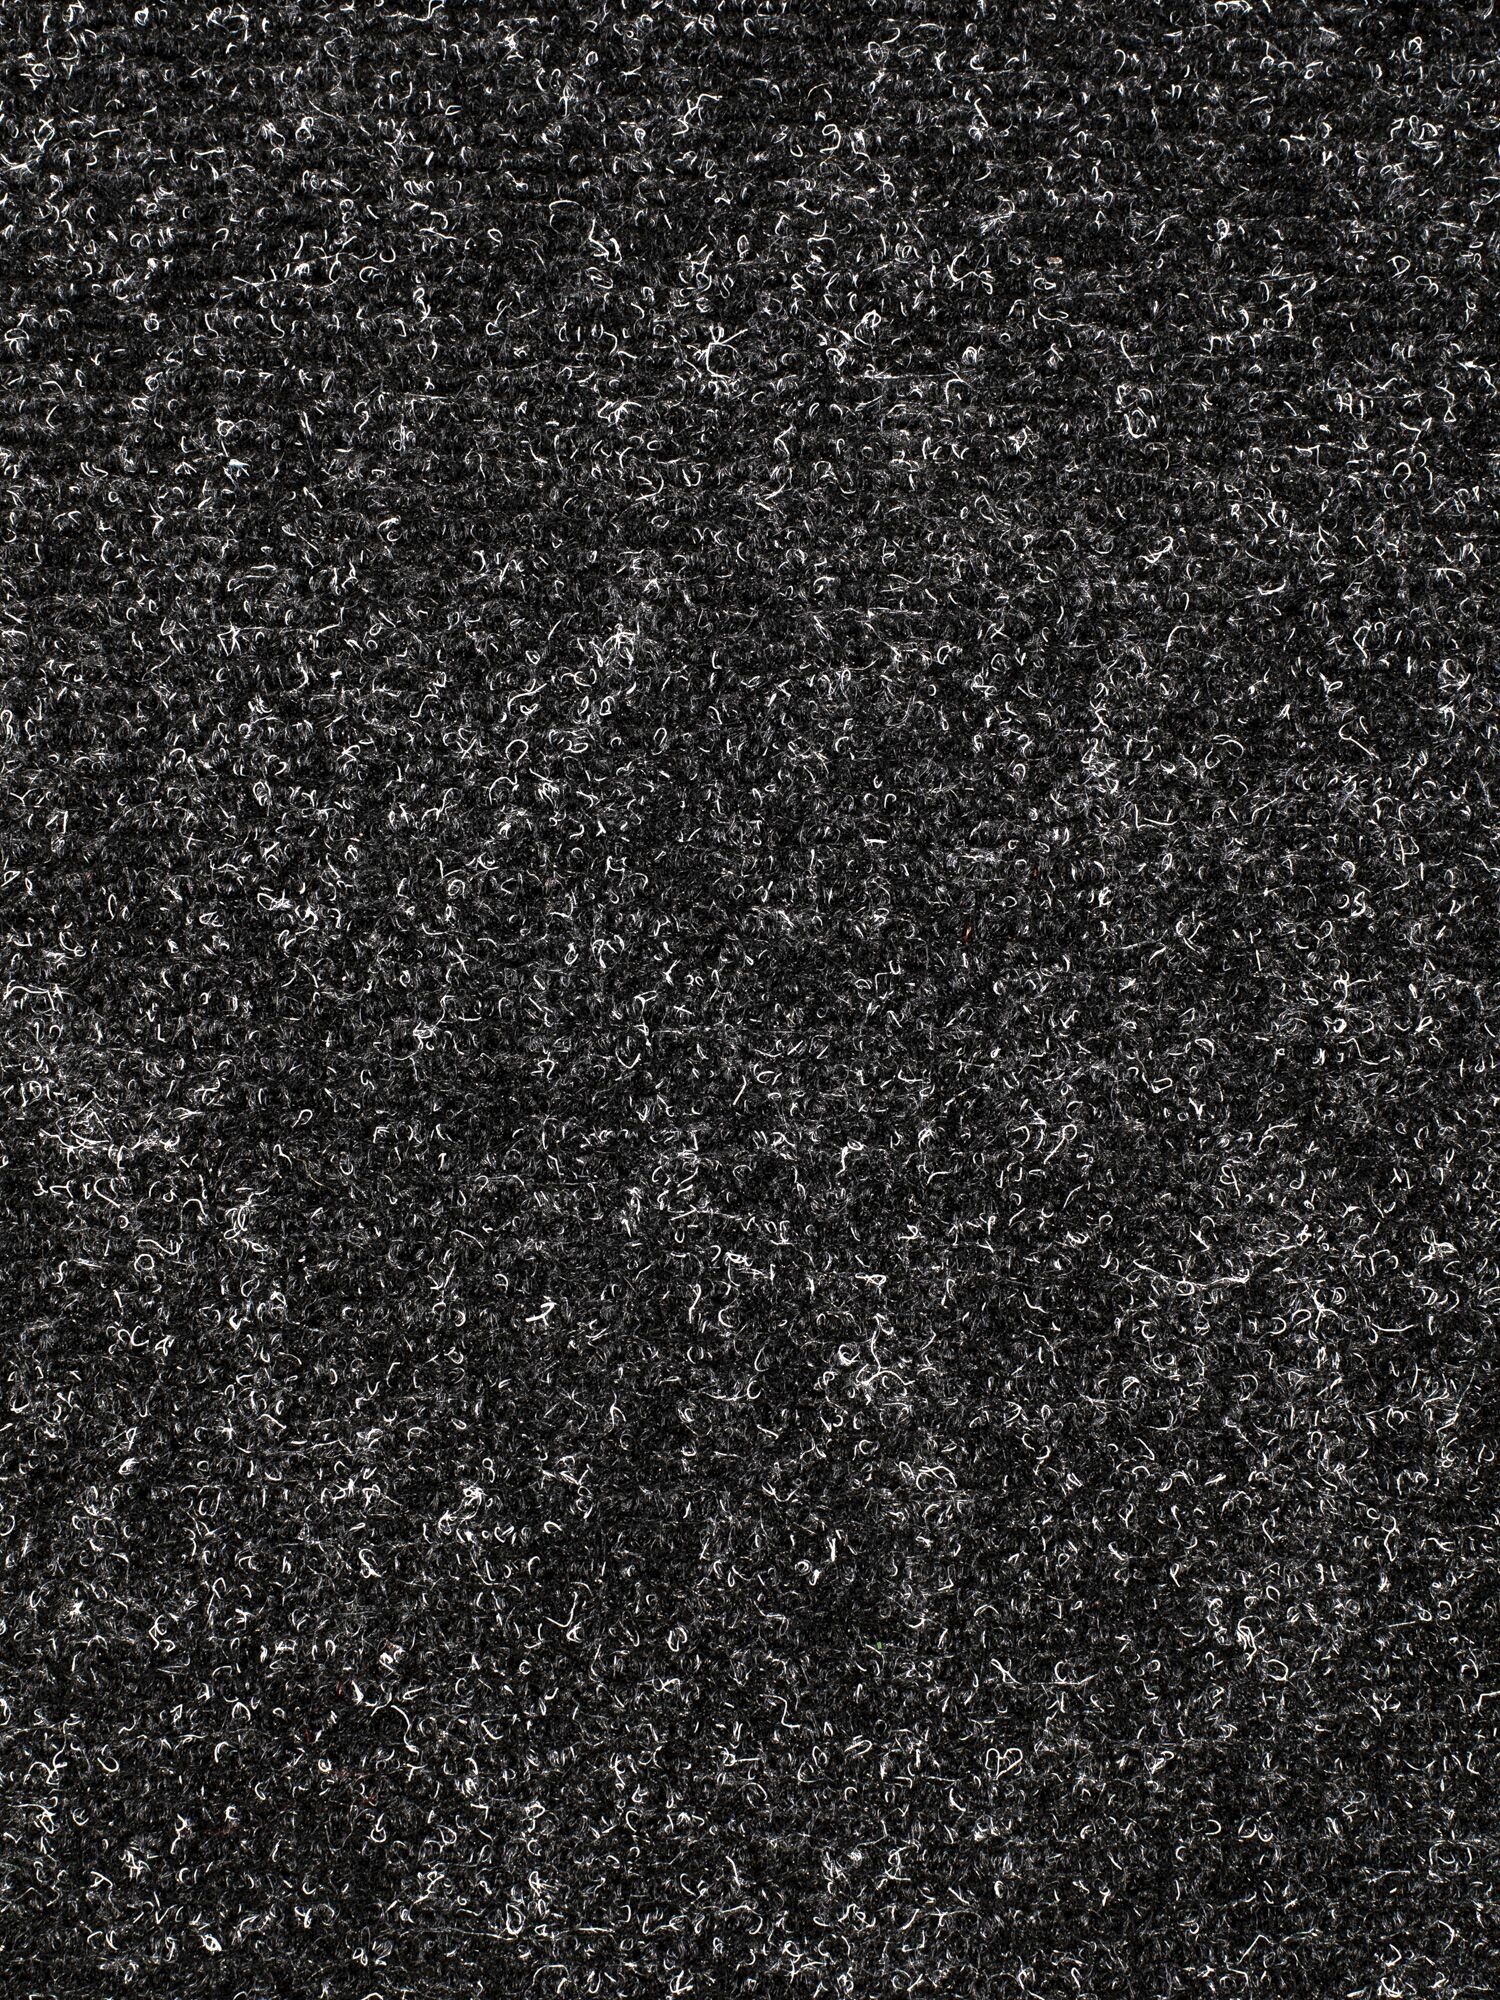 Иглопробивной коврик входной грязезащитный Betap "Dessert 78" на пол. Ковер черного цвета, размер 0,8х1м. - фотография № 10